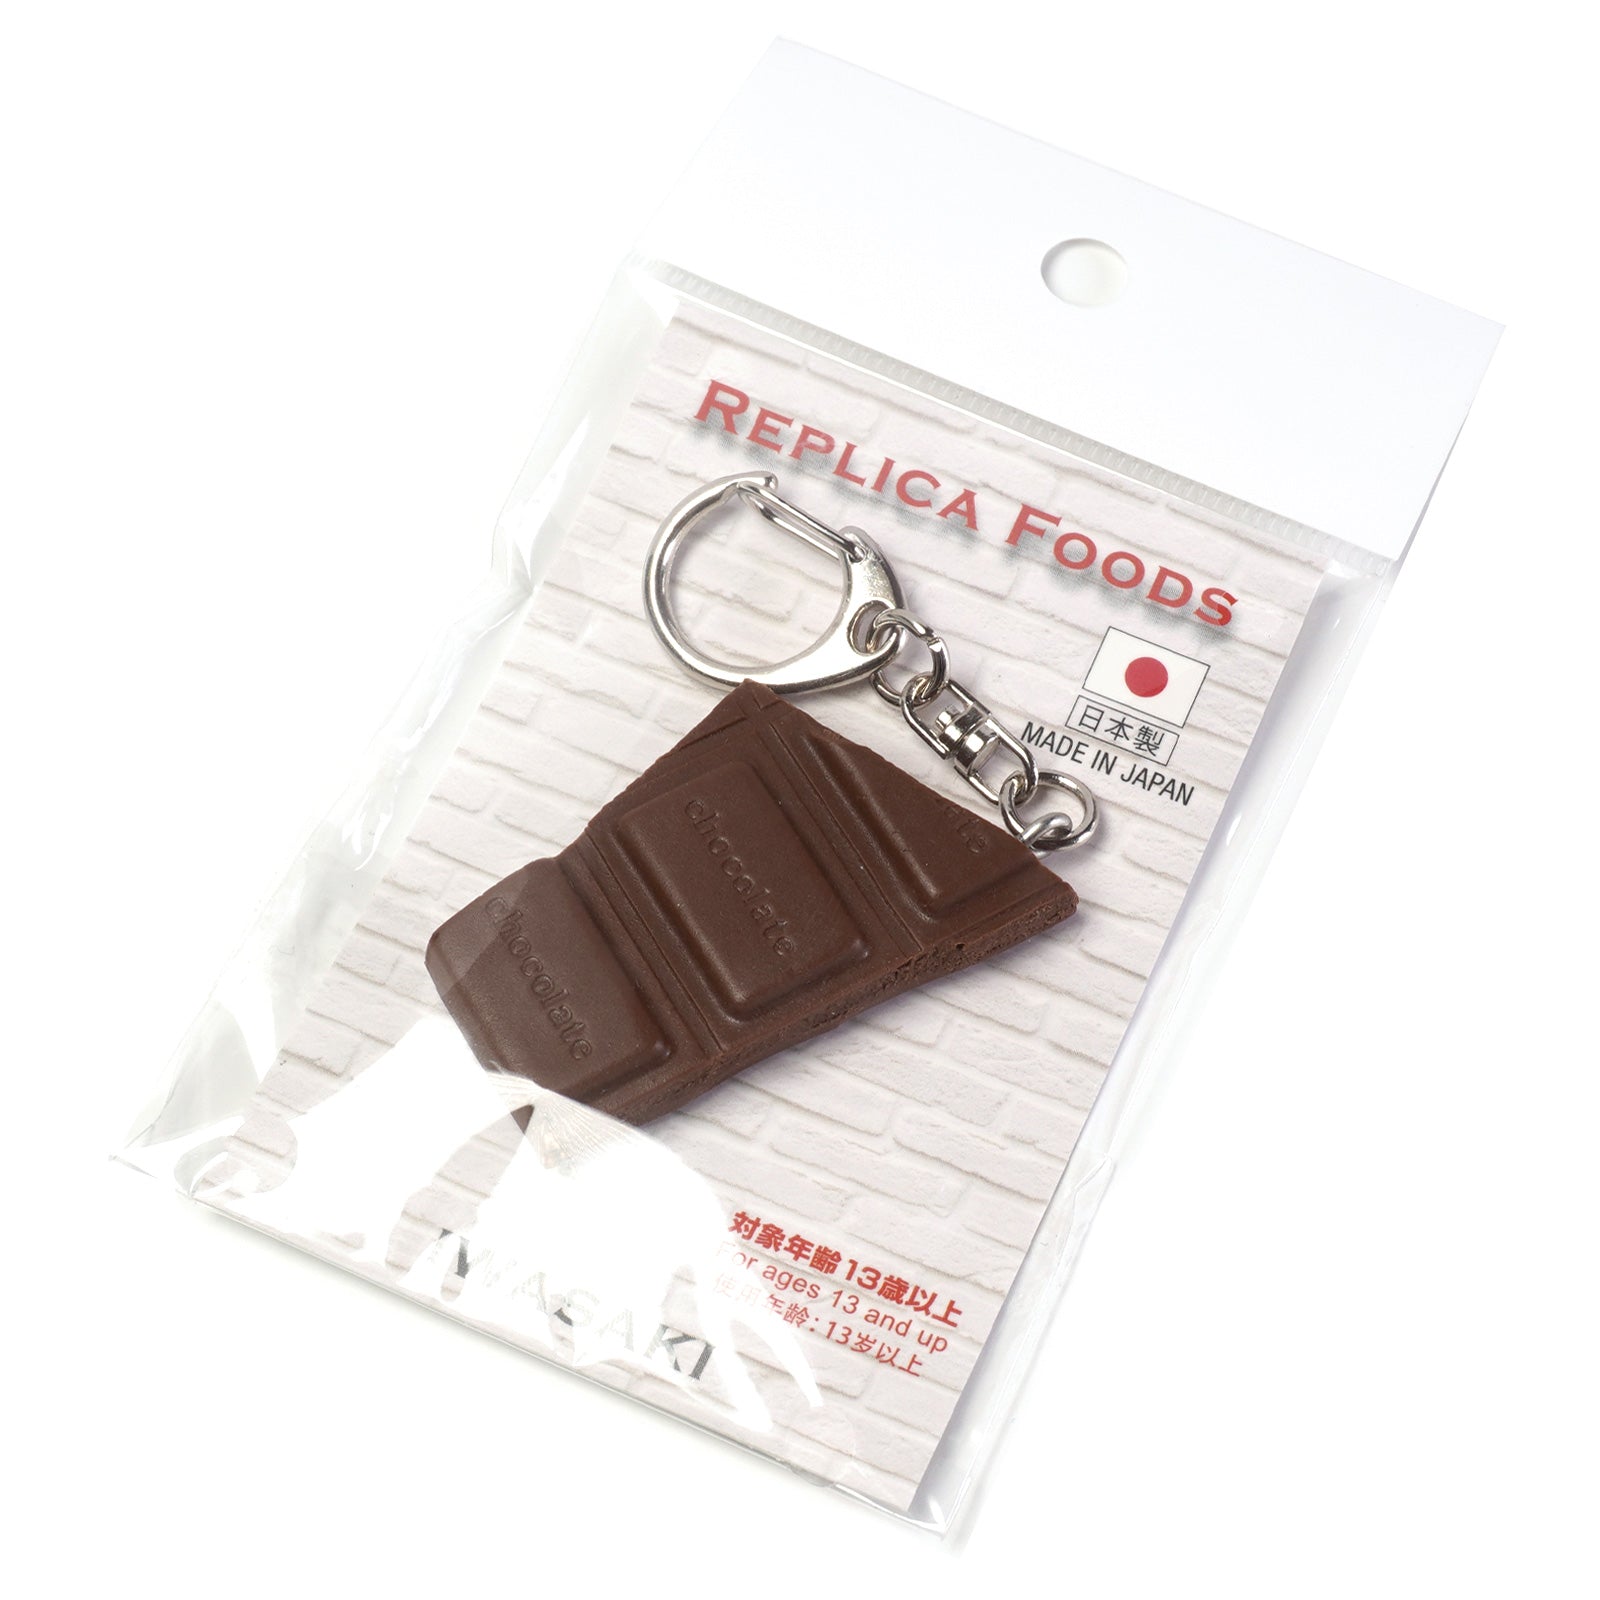 食品サンプル(IWASAKI)「板チョコのキーリング 」の商品パッケージ画像です。